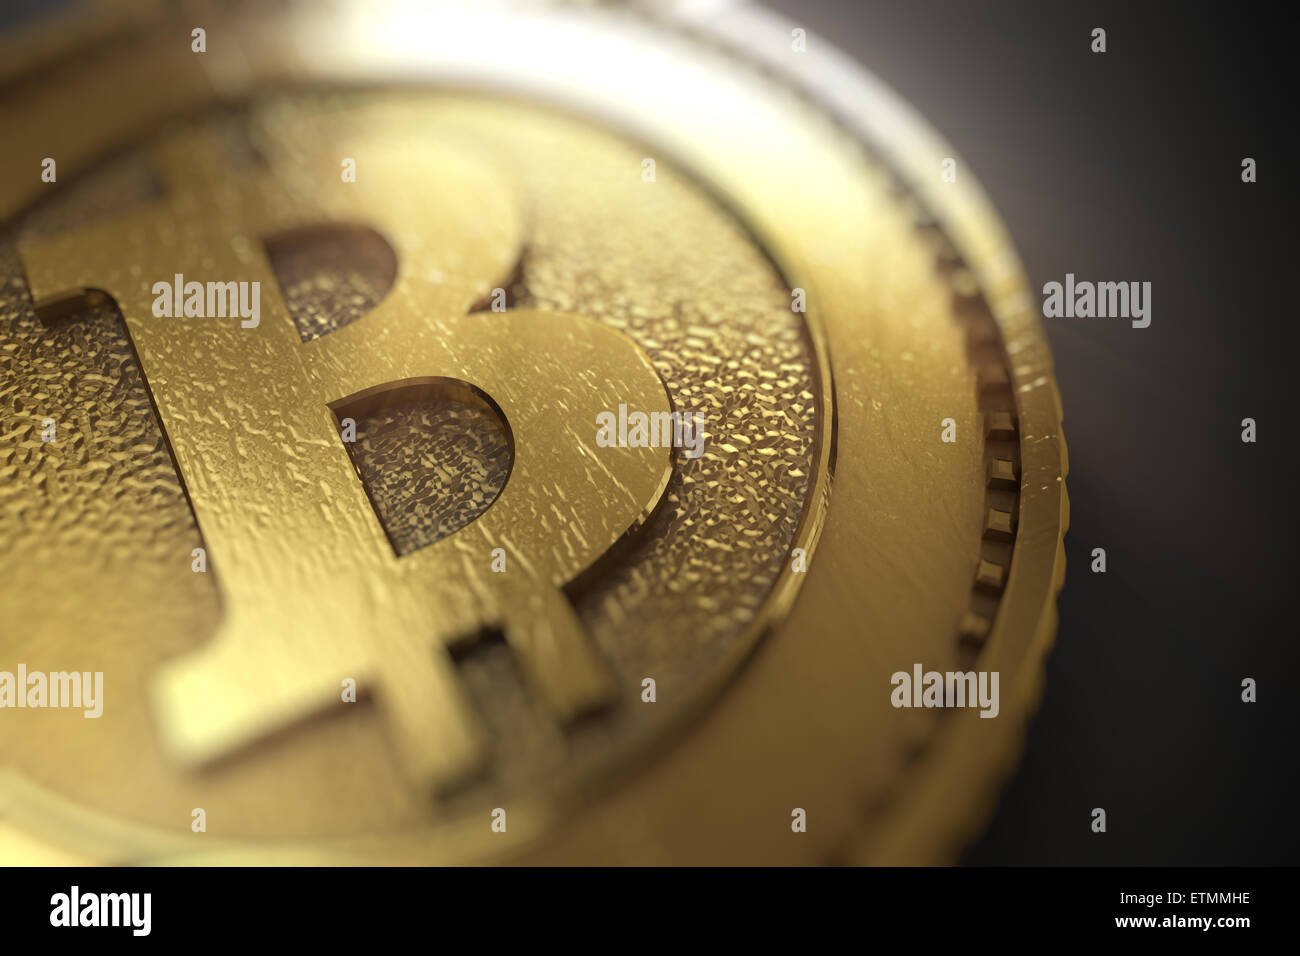 Stilisierte Darstellung von Bitcoin, eine digitale Währung. Stockfoto